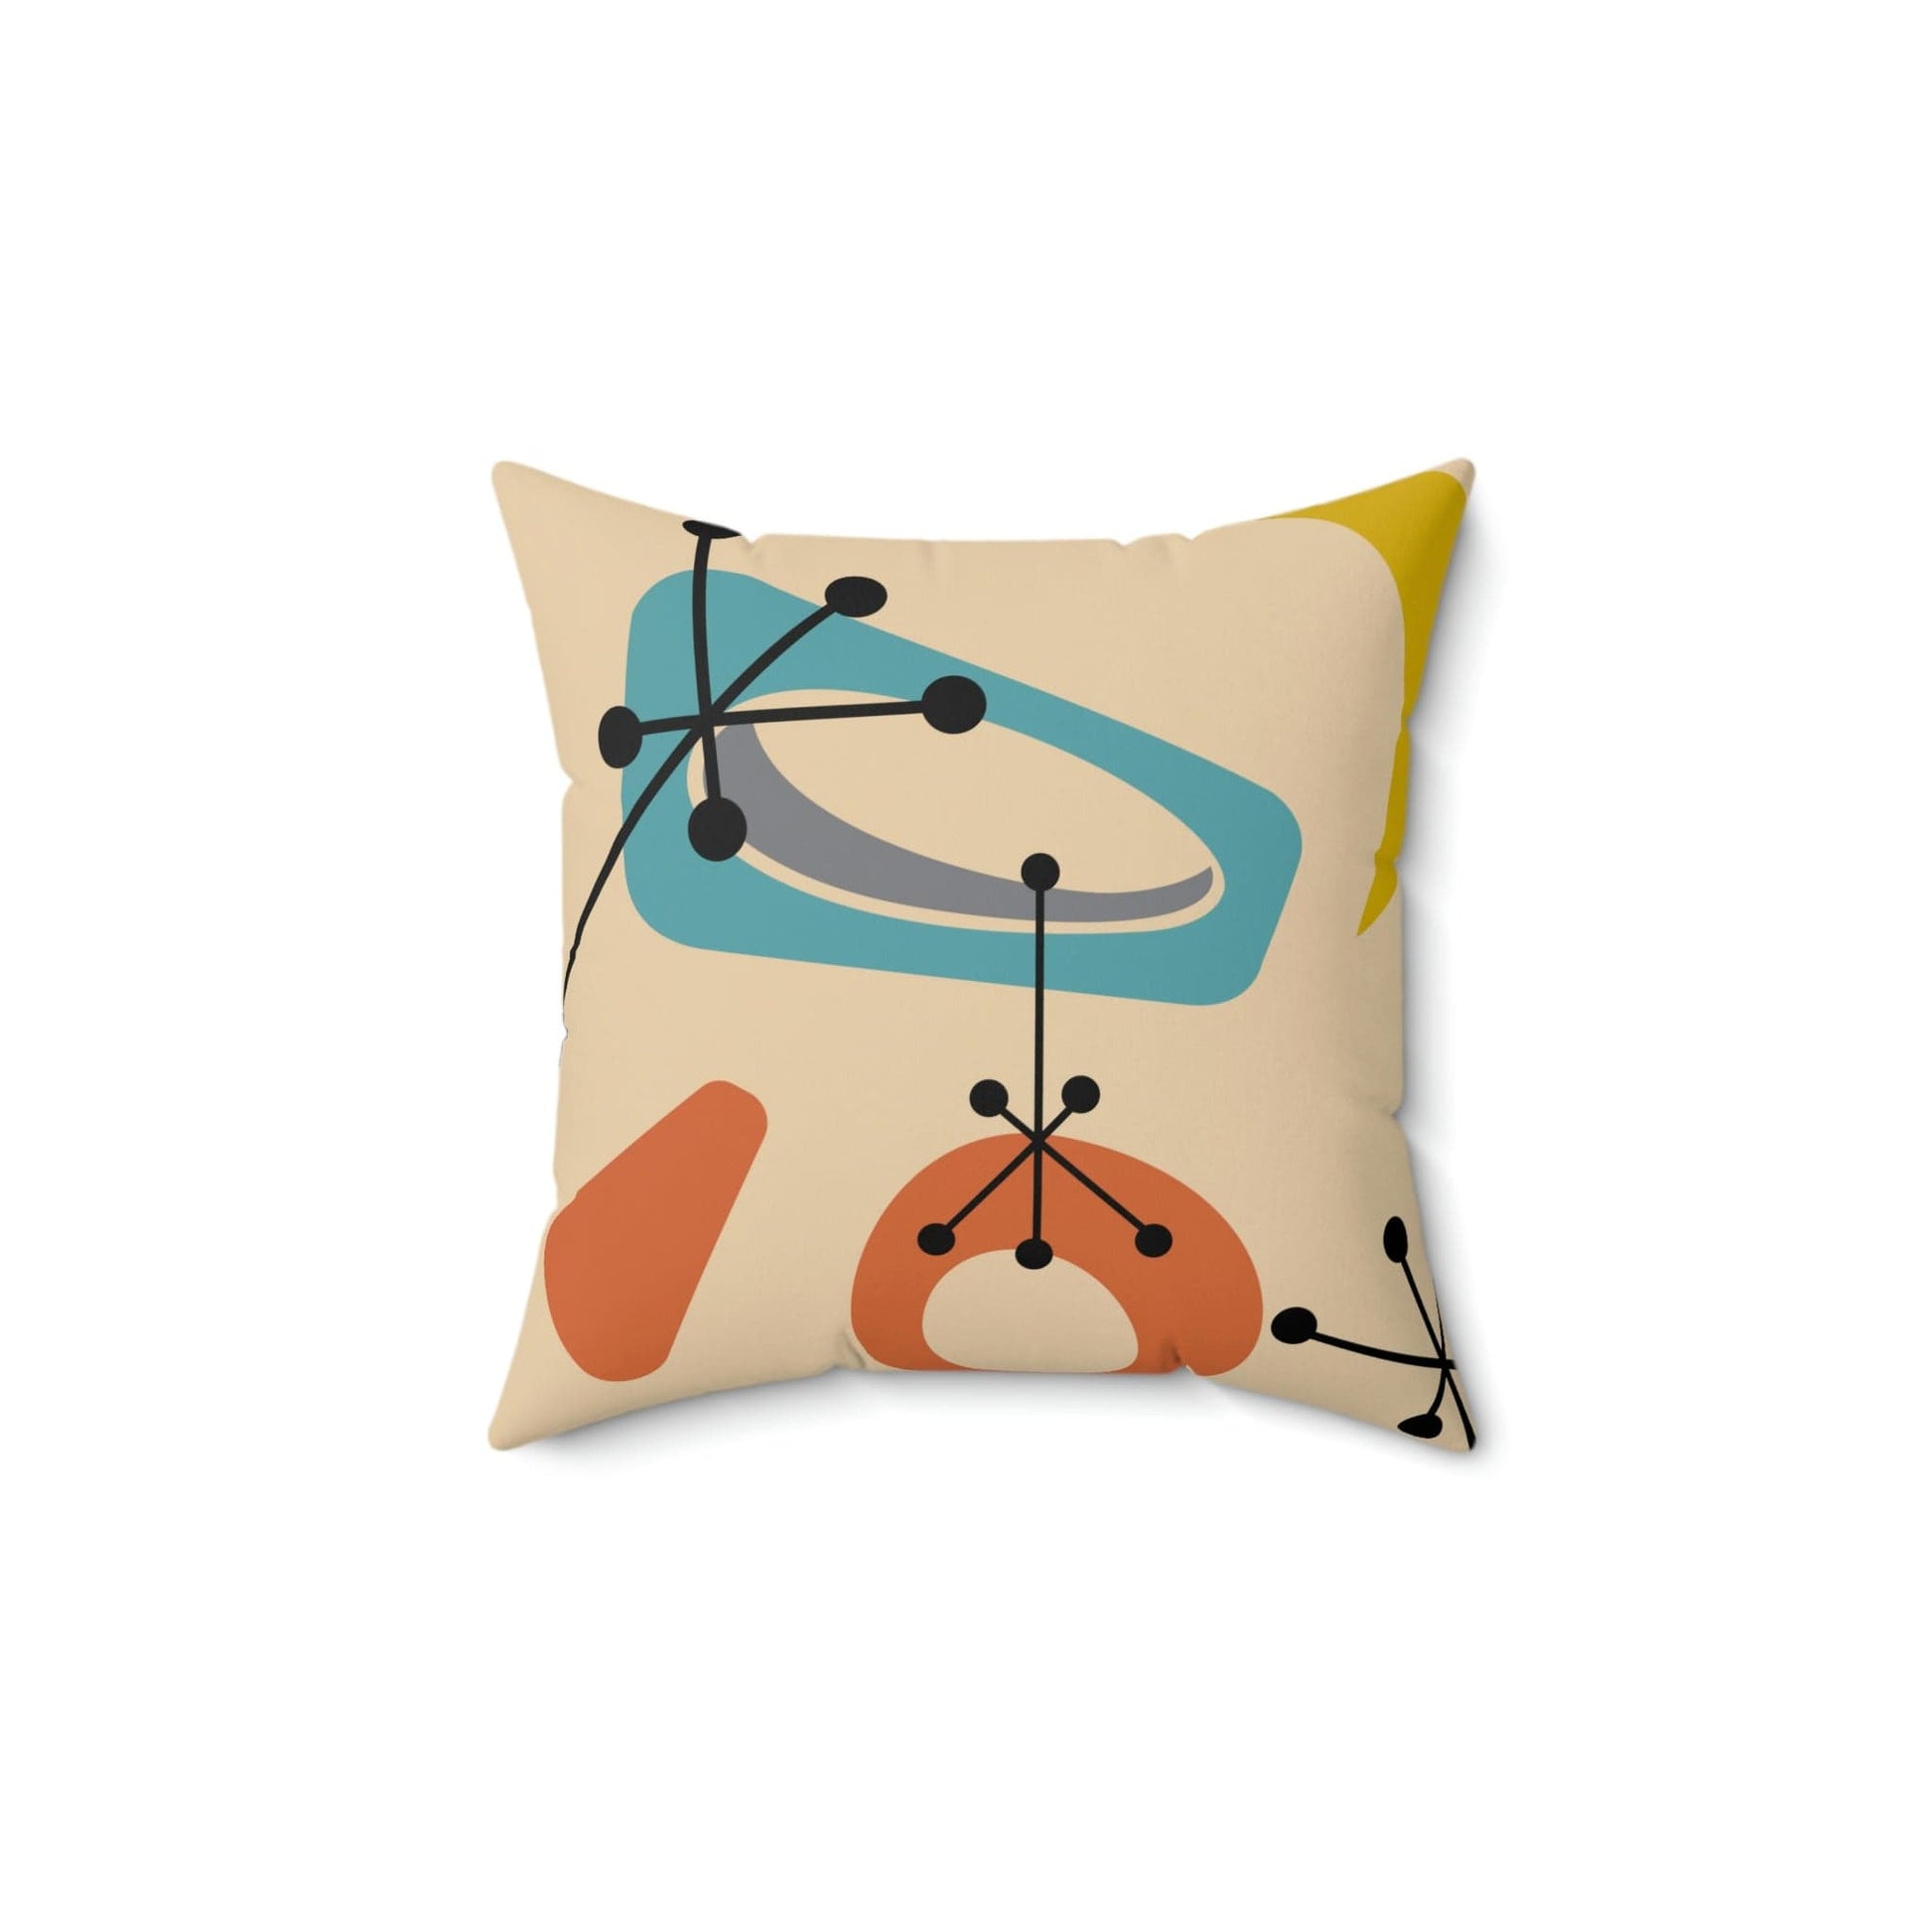 Kate McEnroe New York Mid Century Modern Retro Atomic Starburst Pillow Throw Pillows 14" × 14" 12856040565554362920